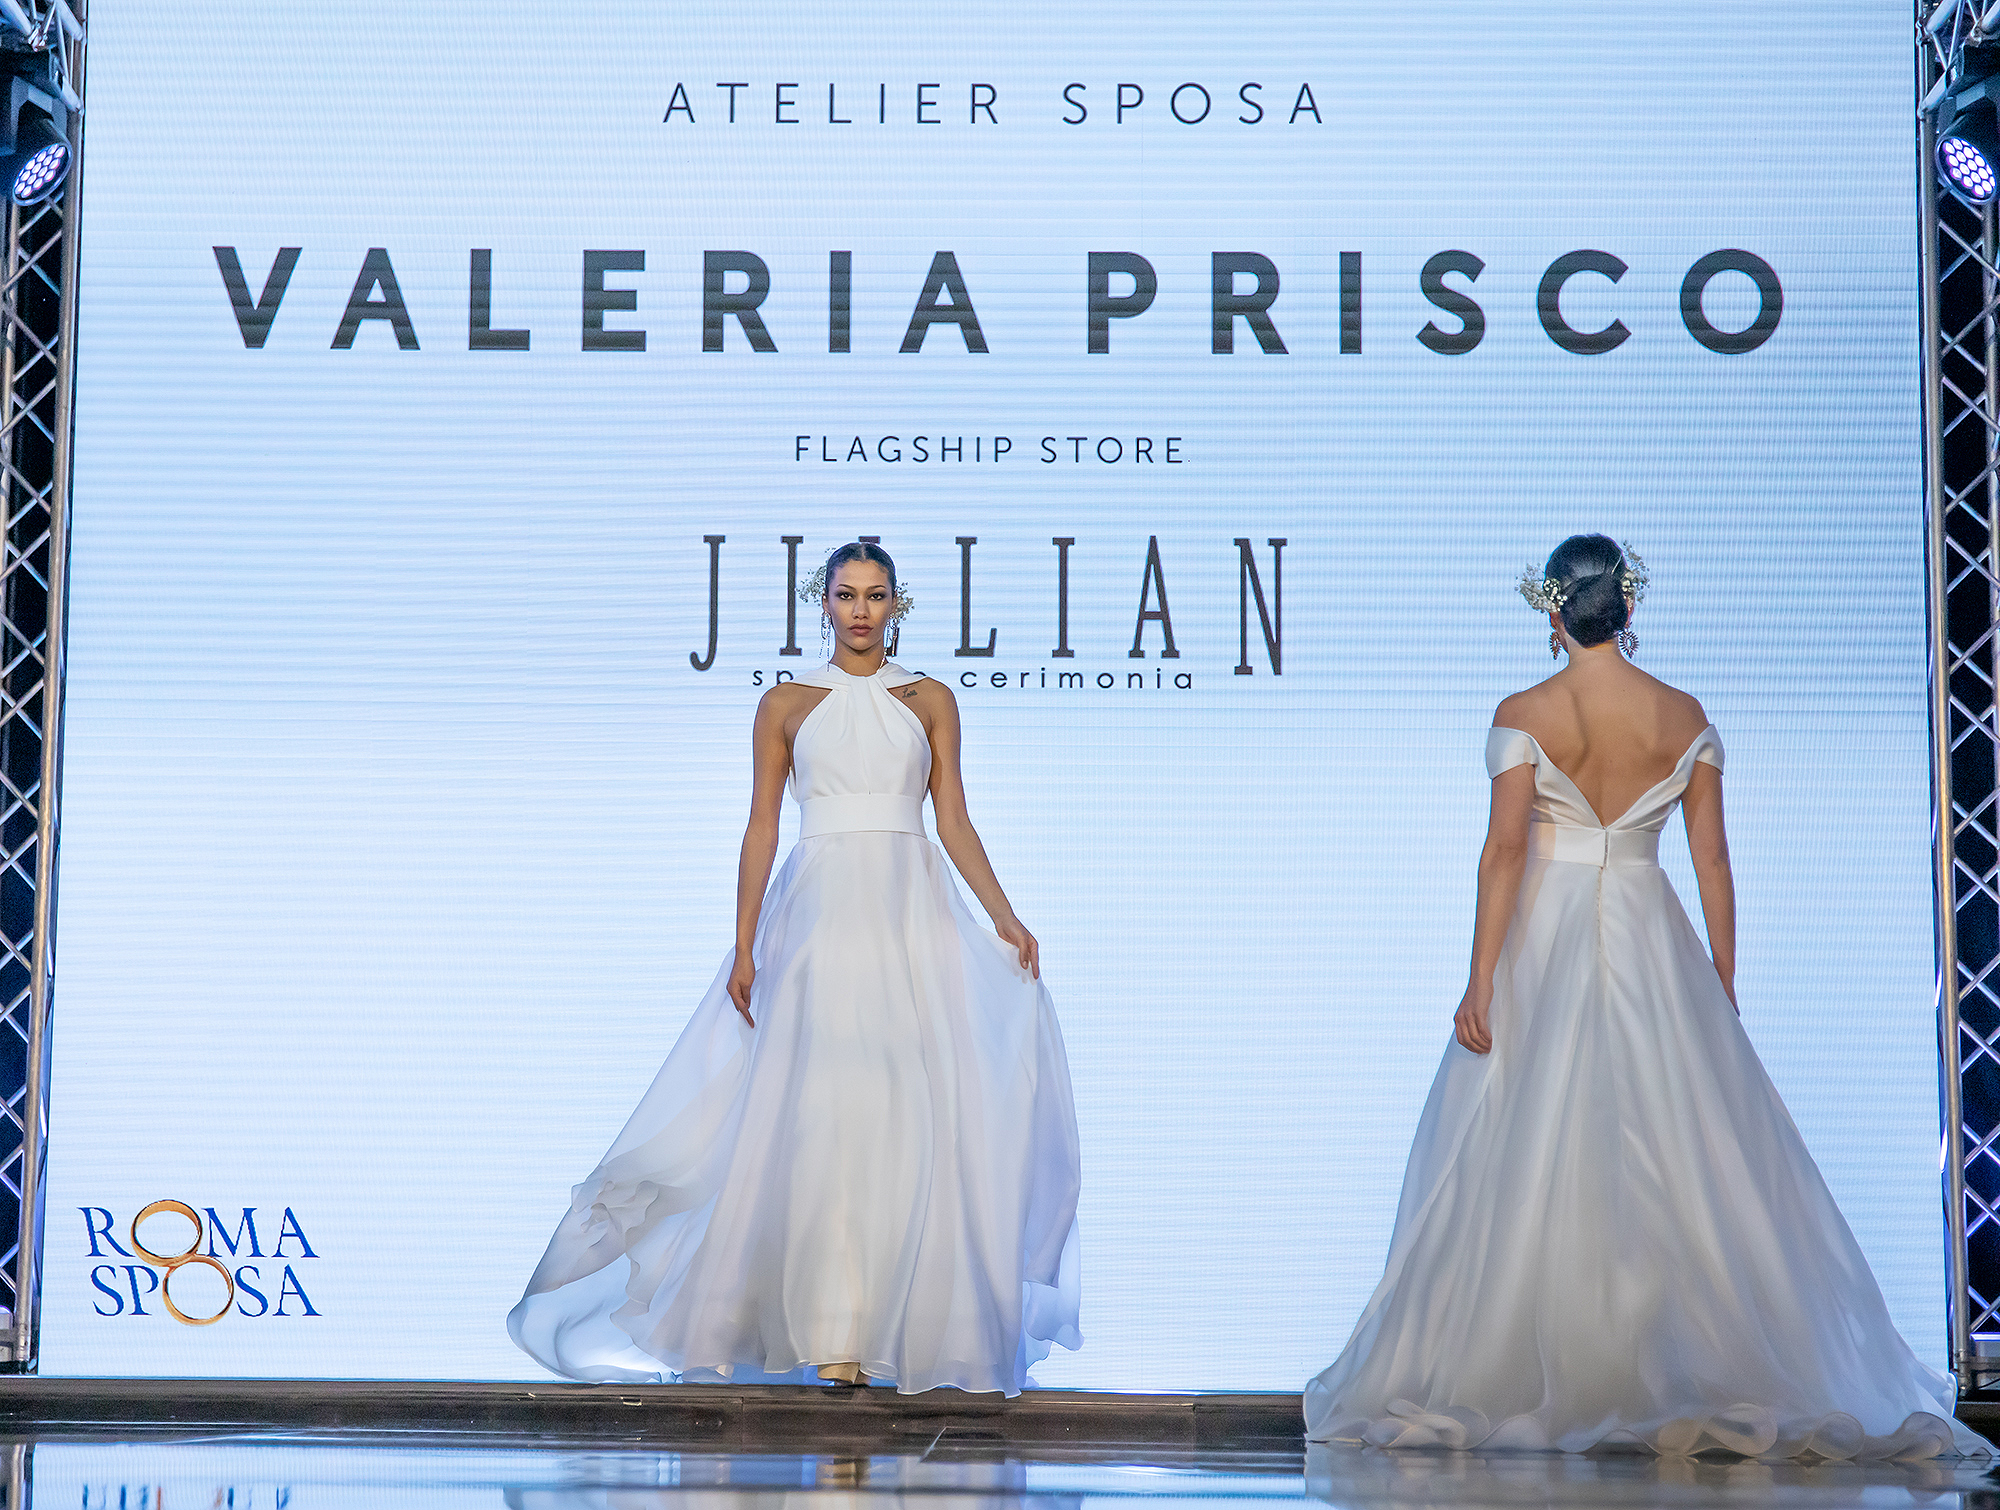 Valeria Prisco Atelier per Jillian a Roma Sposa 2021